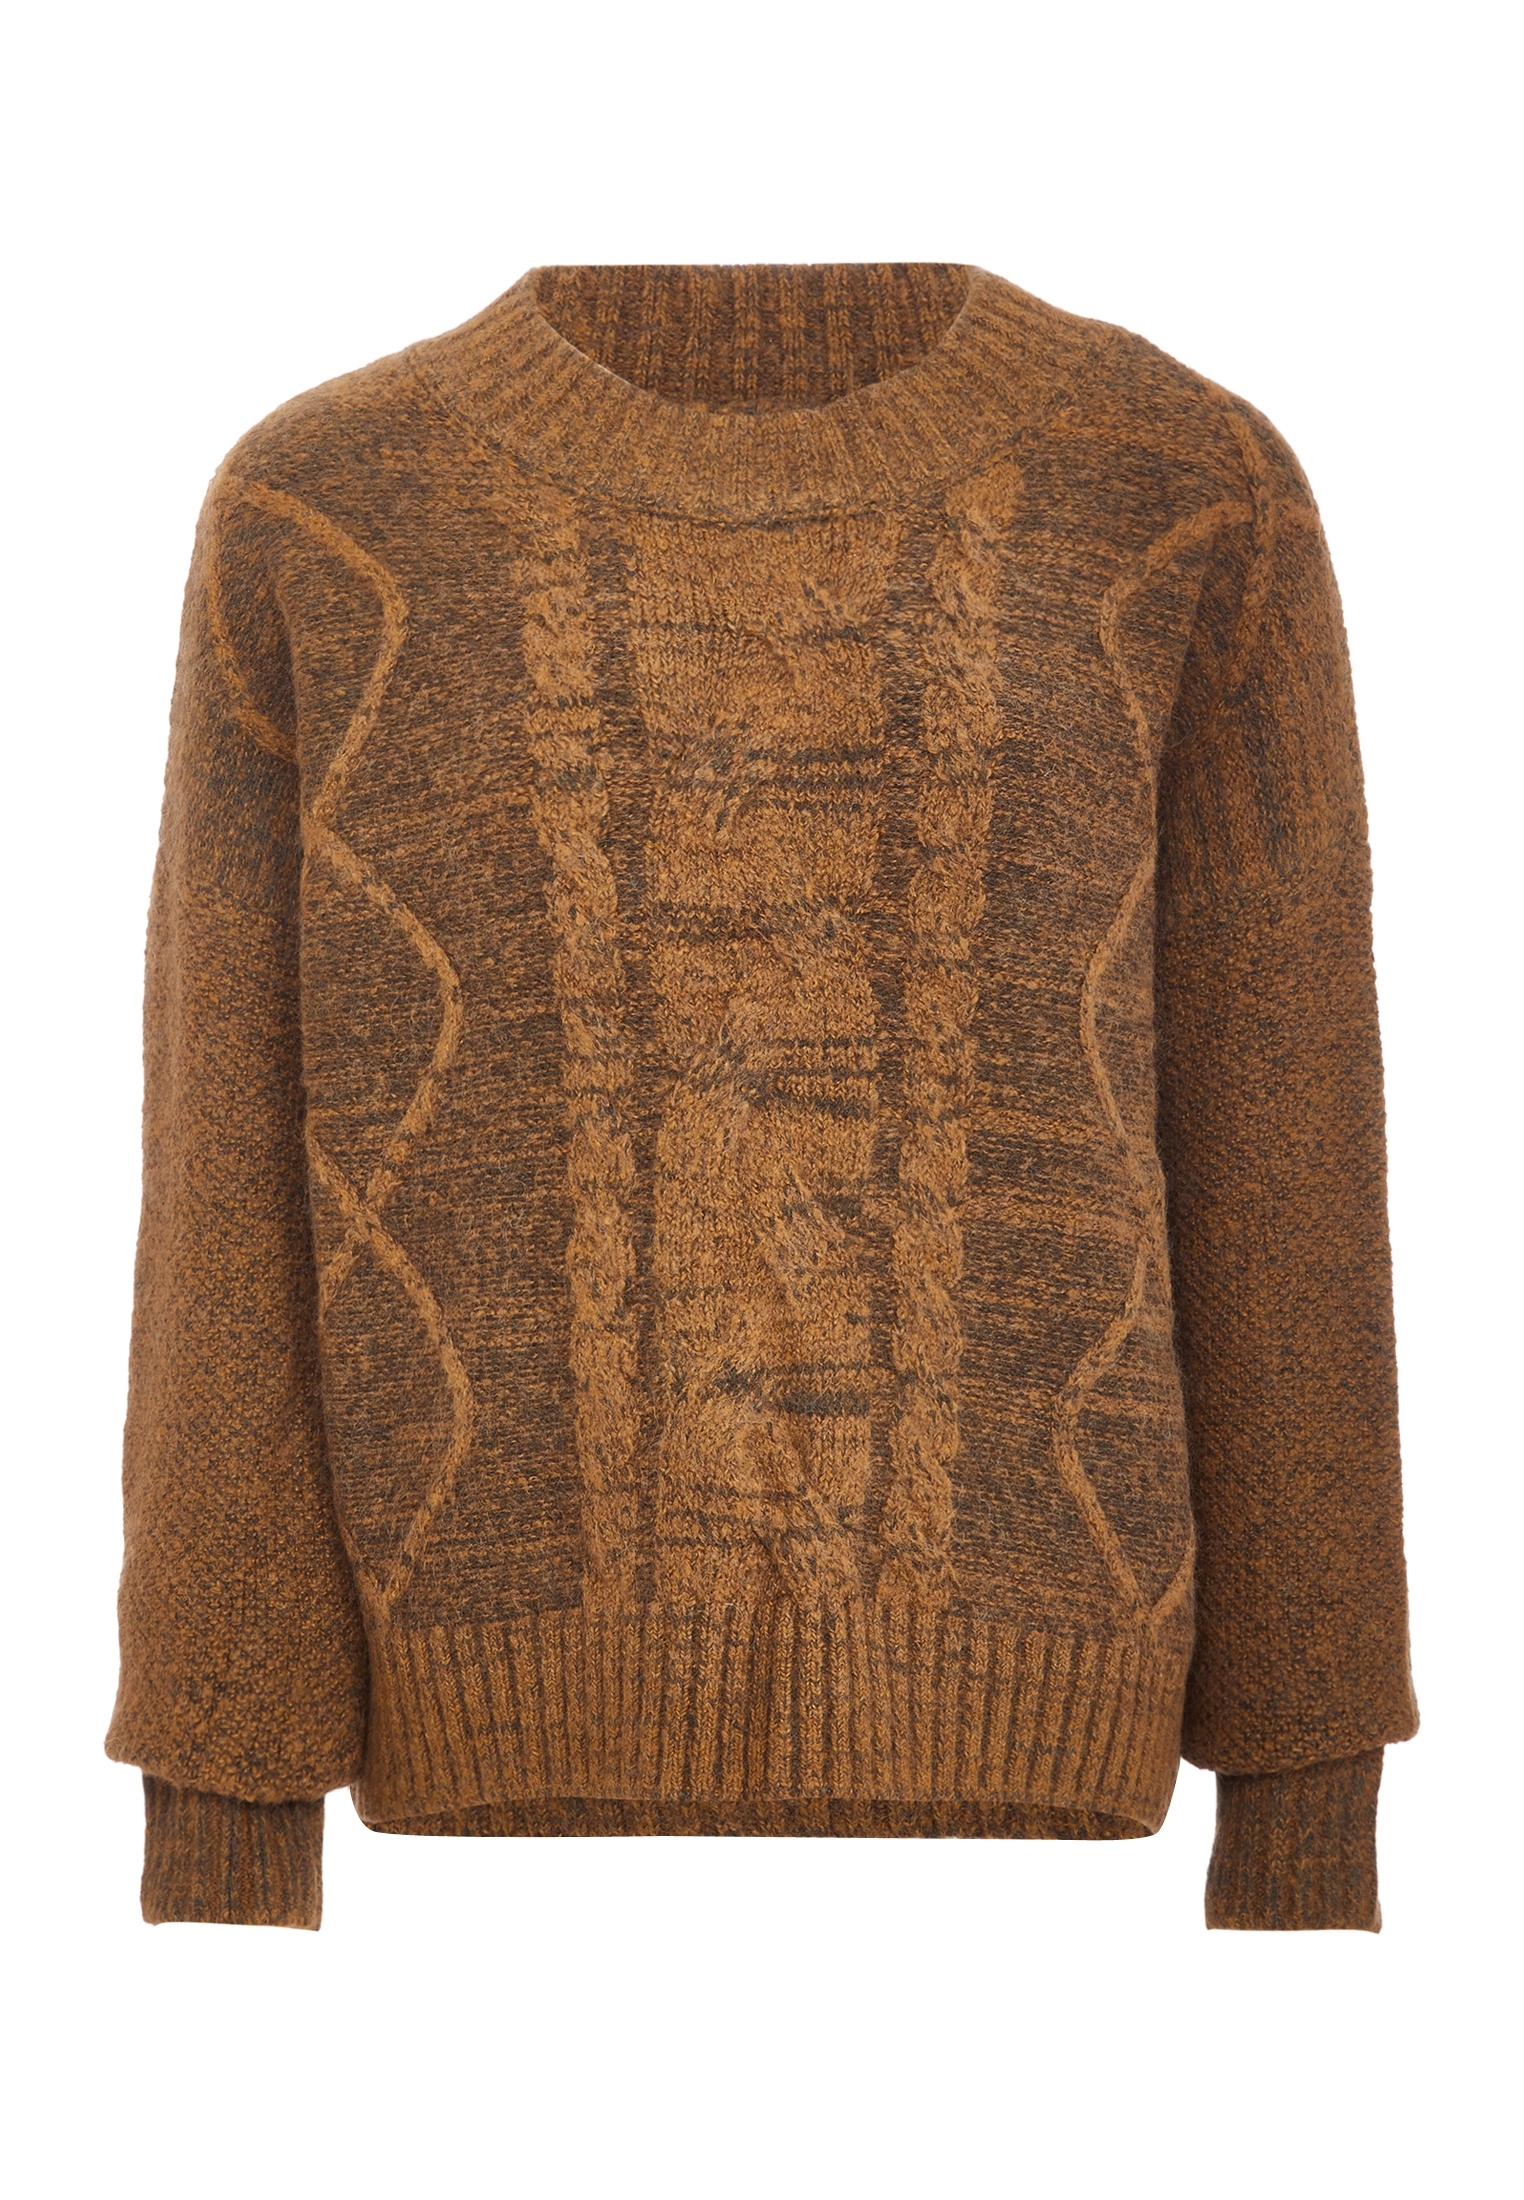 Свитер Tanuna Strick, коричневый свитер tanuna strick цвет senf